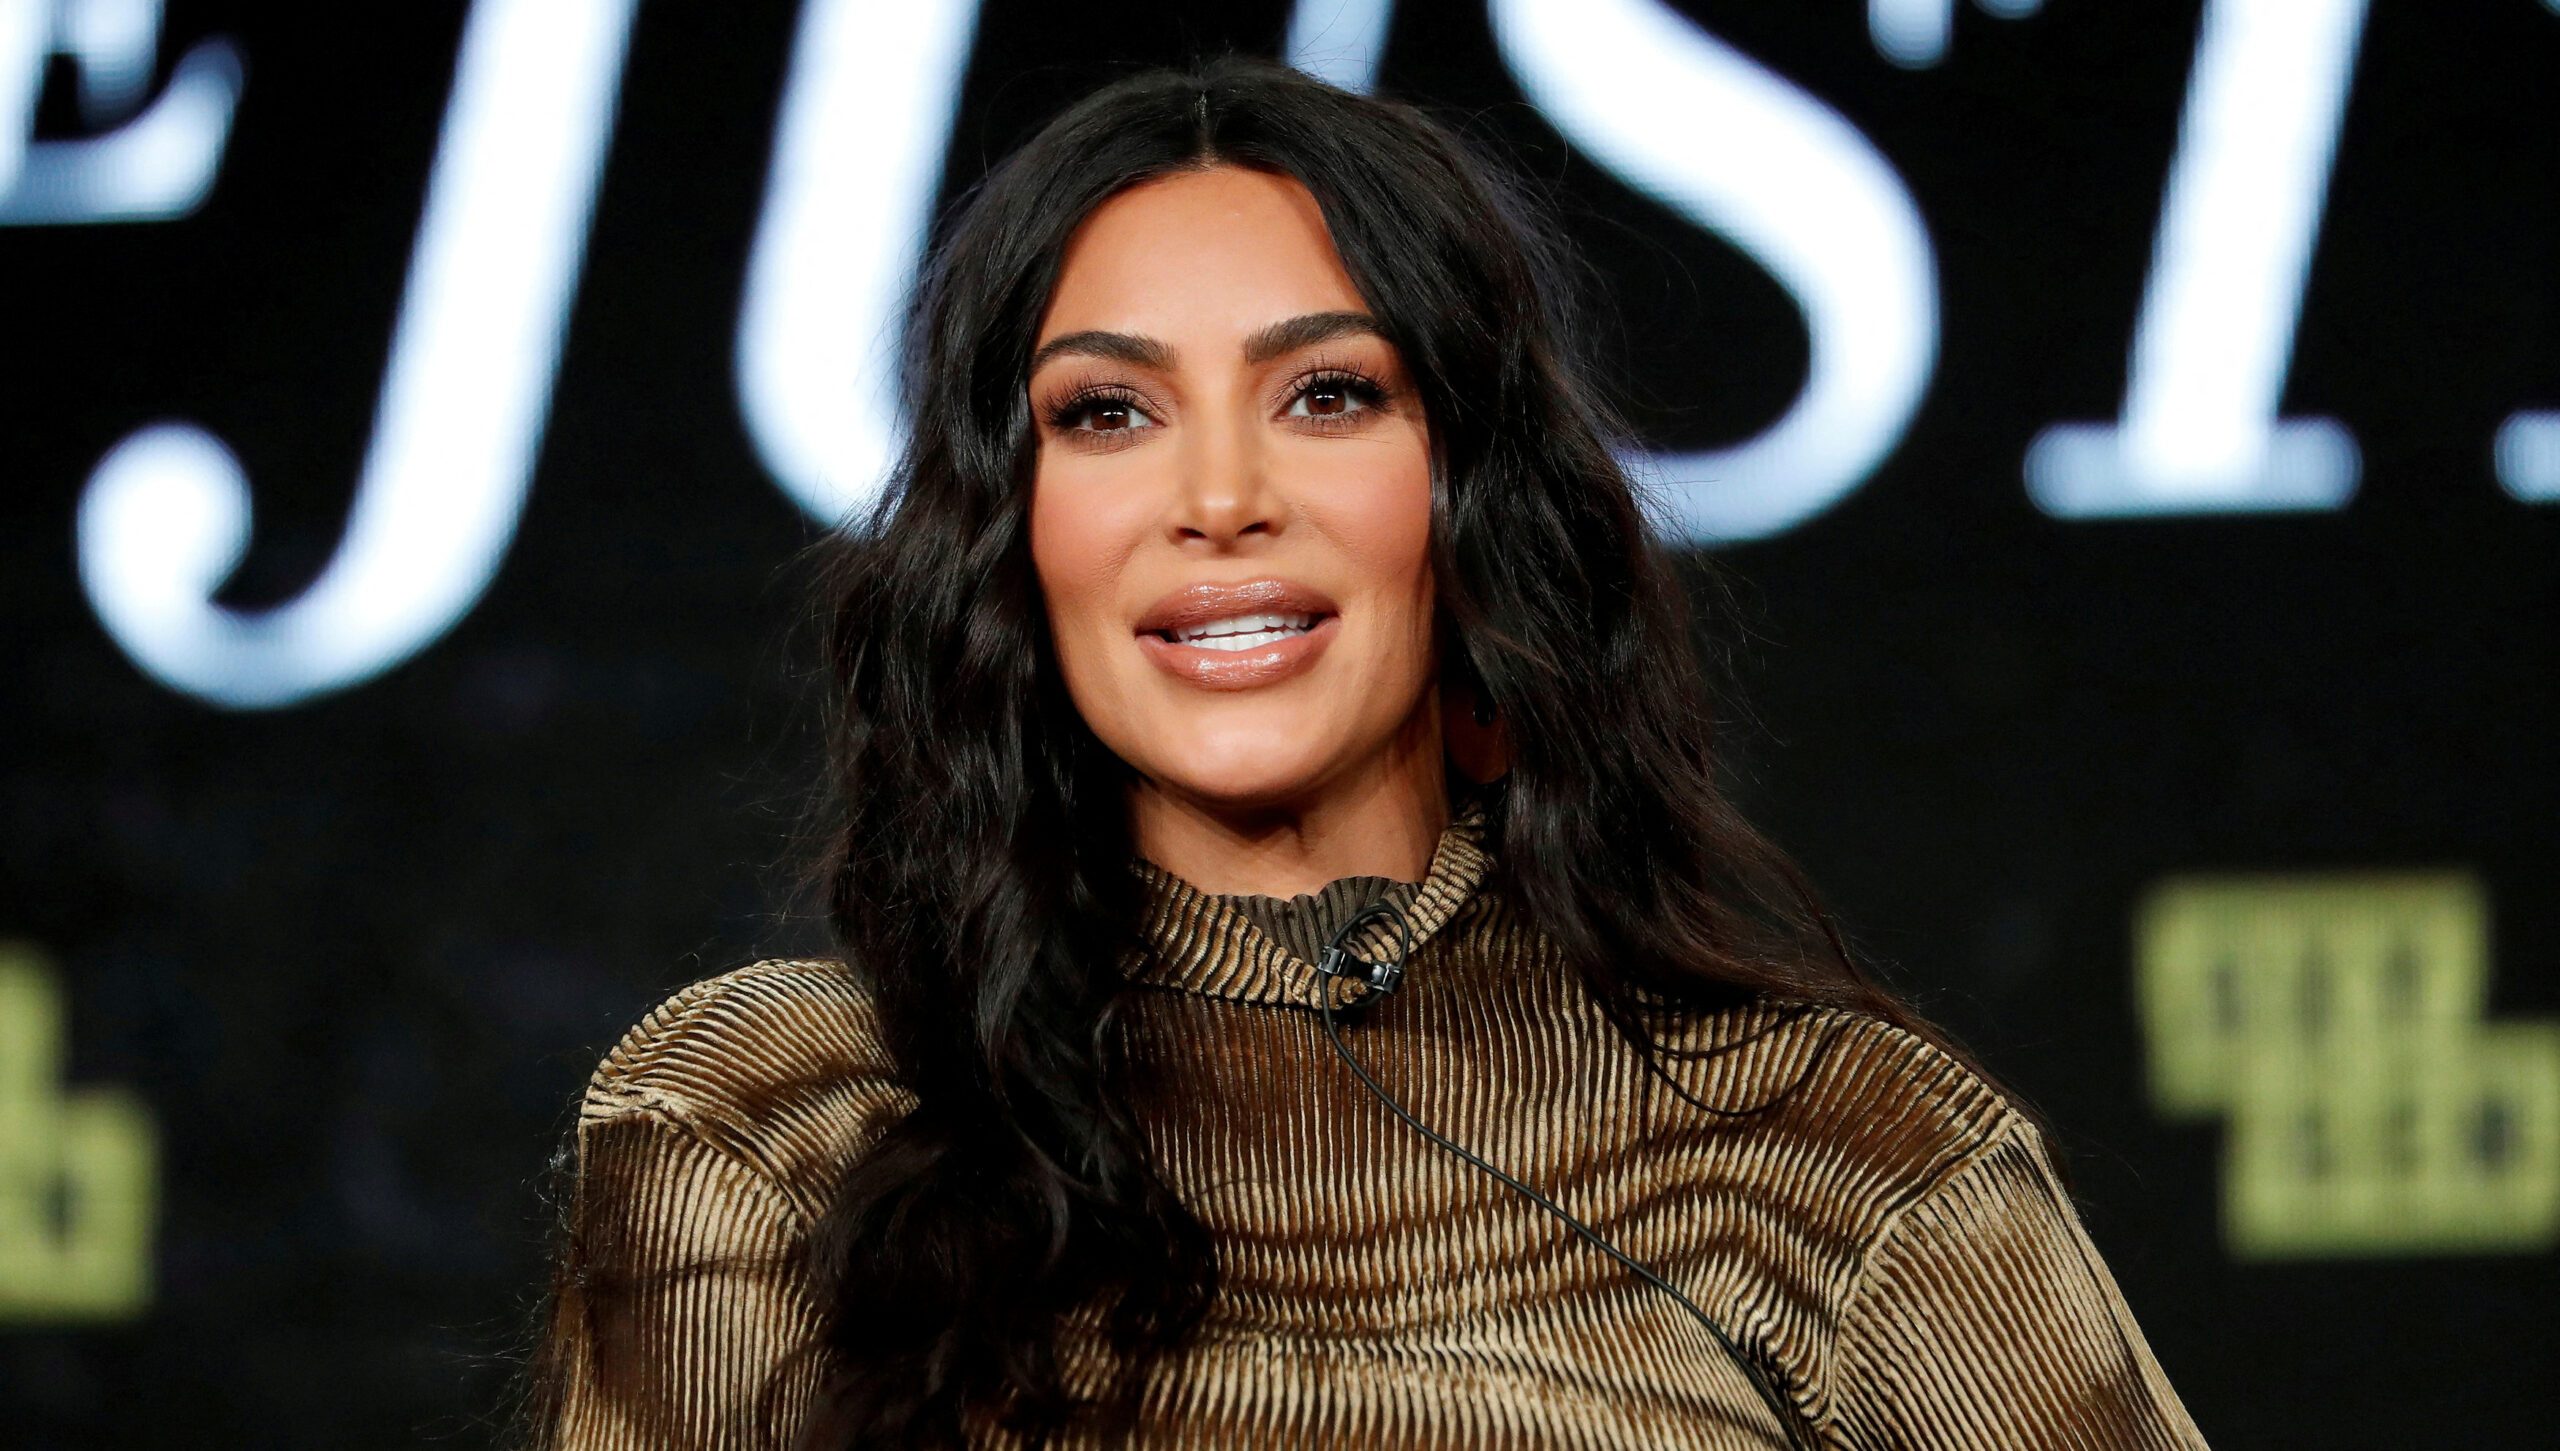 Kim Kardashian pays $1.26 million fine for paid crypto ad, SEC says